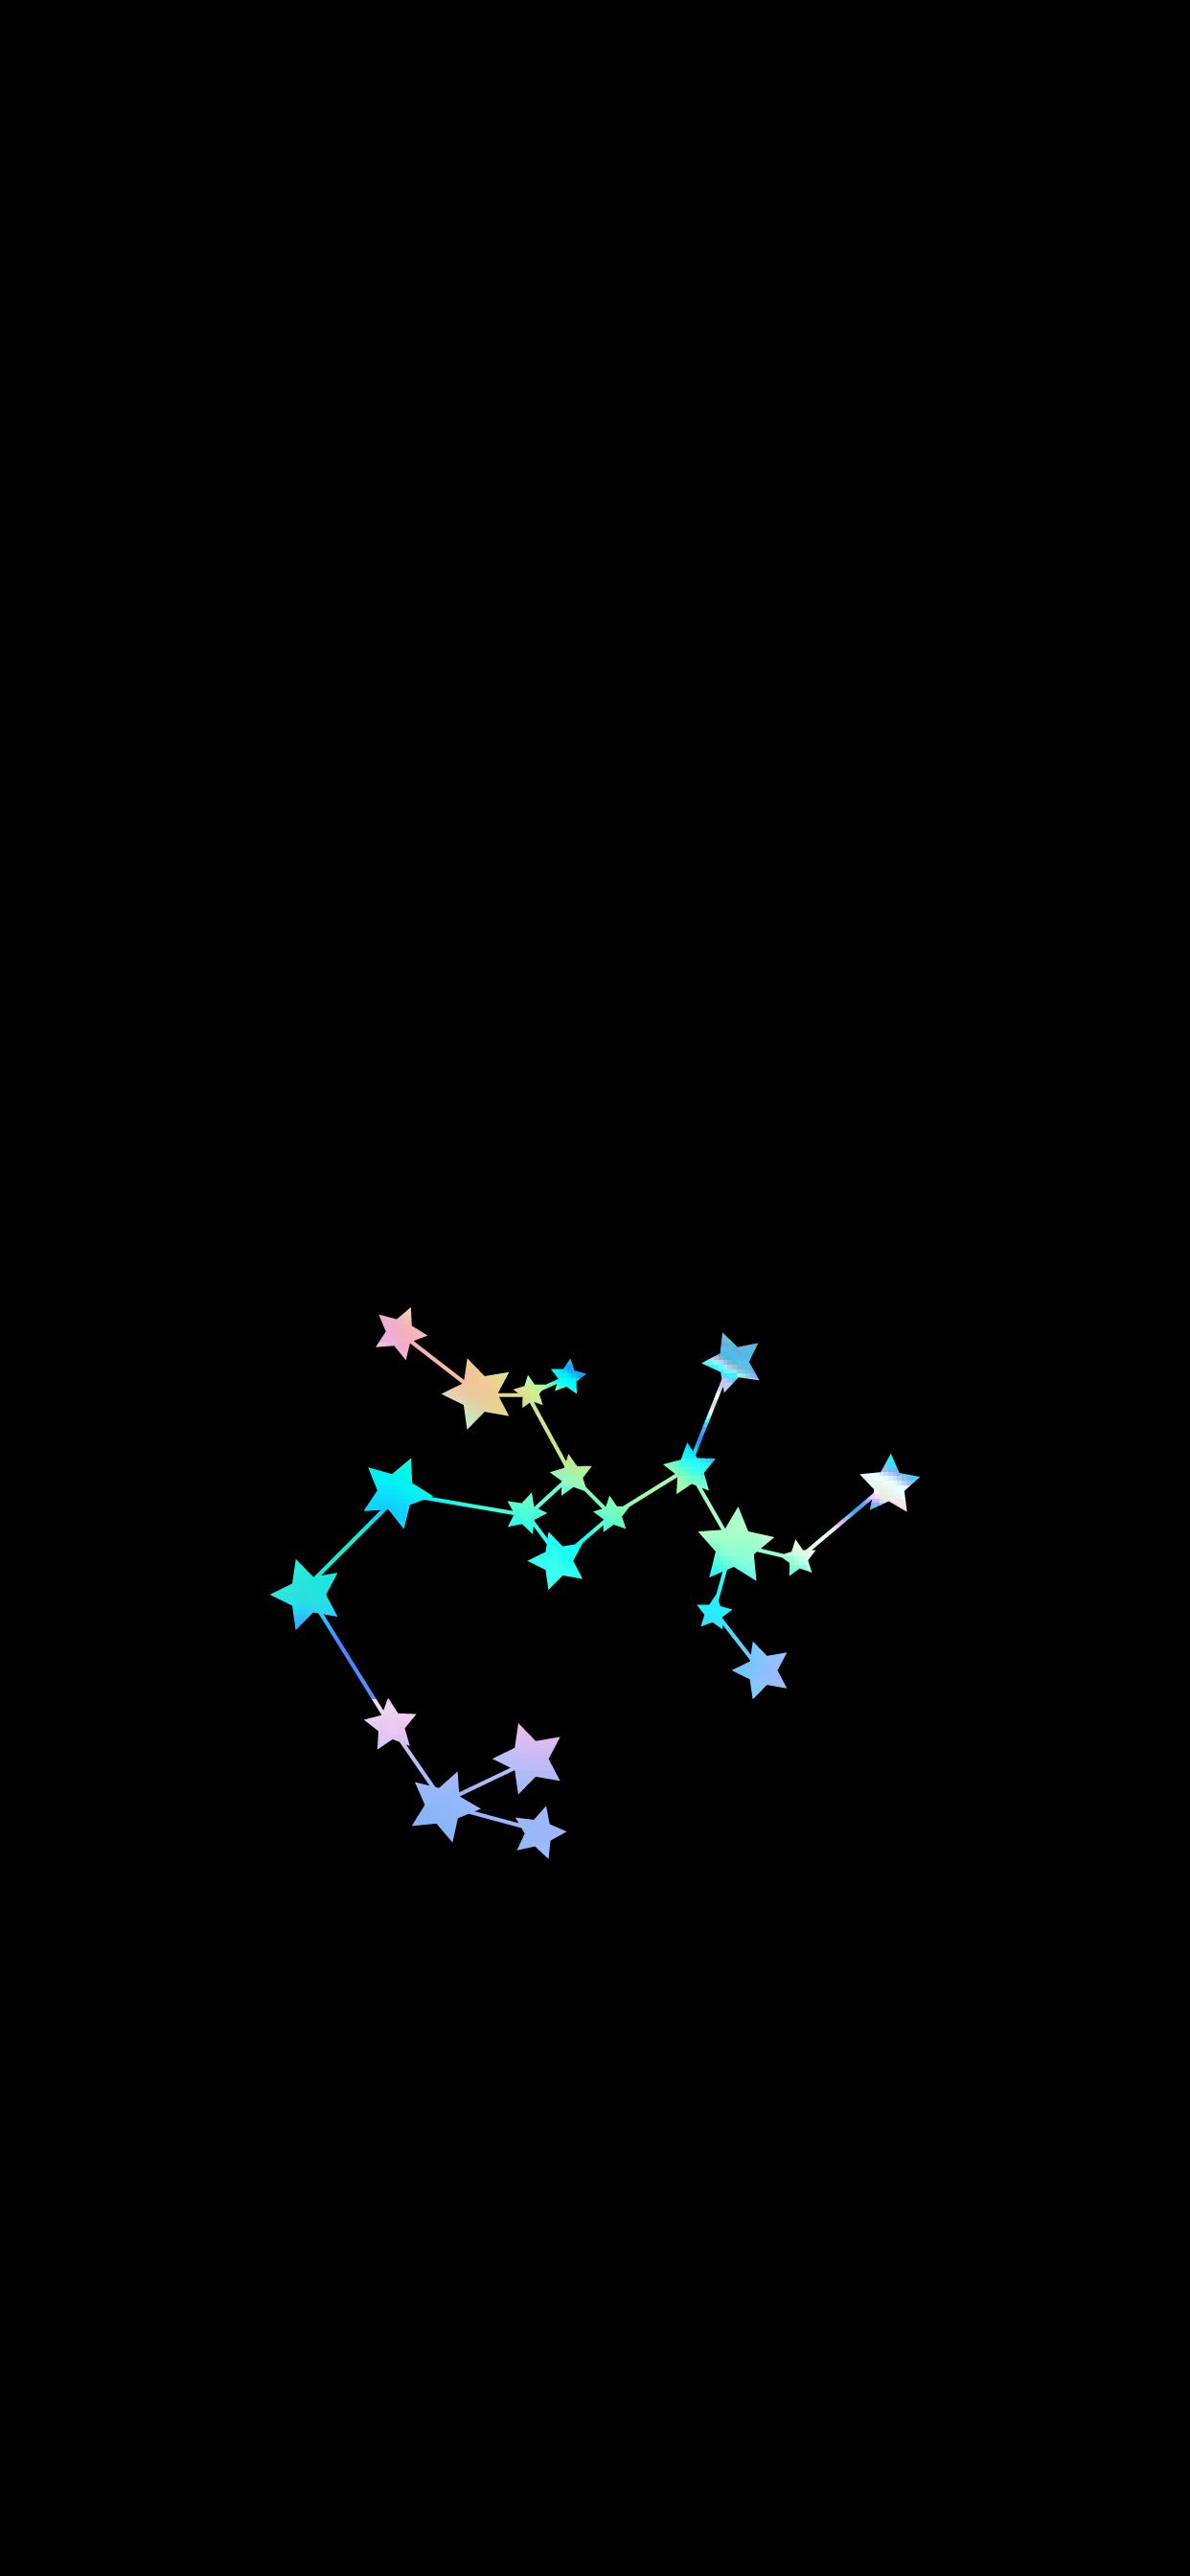 Sagittarius Iridescent iPhone wallpaper .ar.com